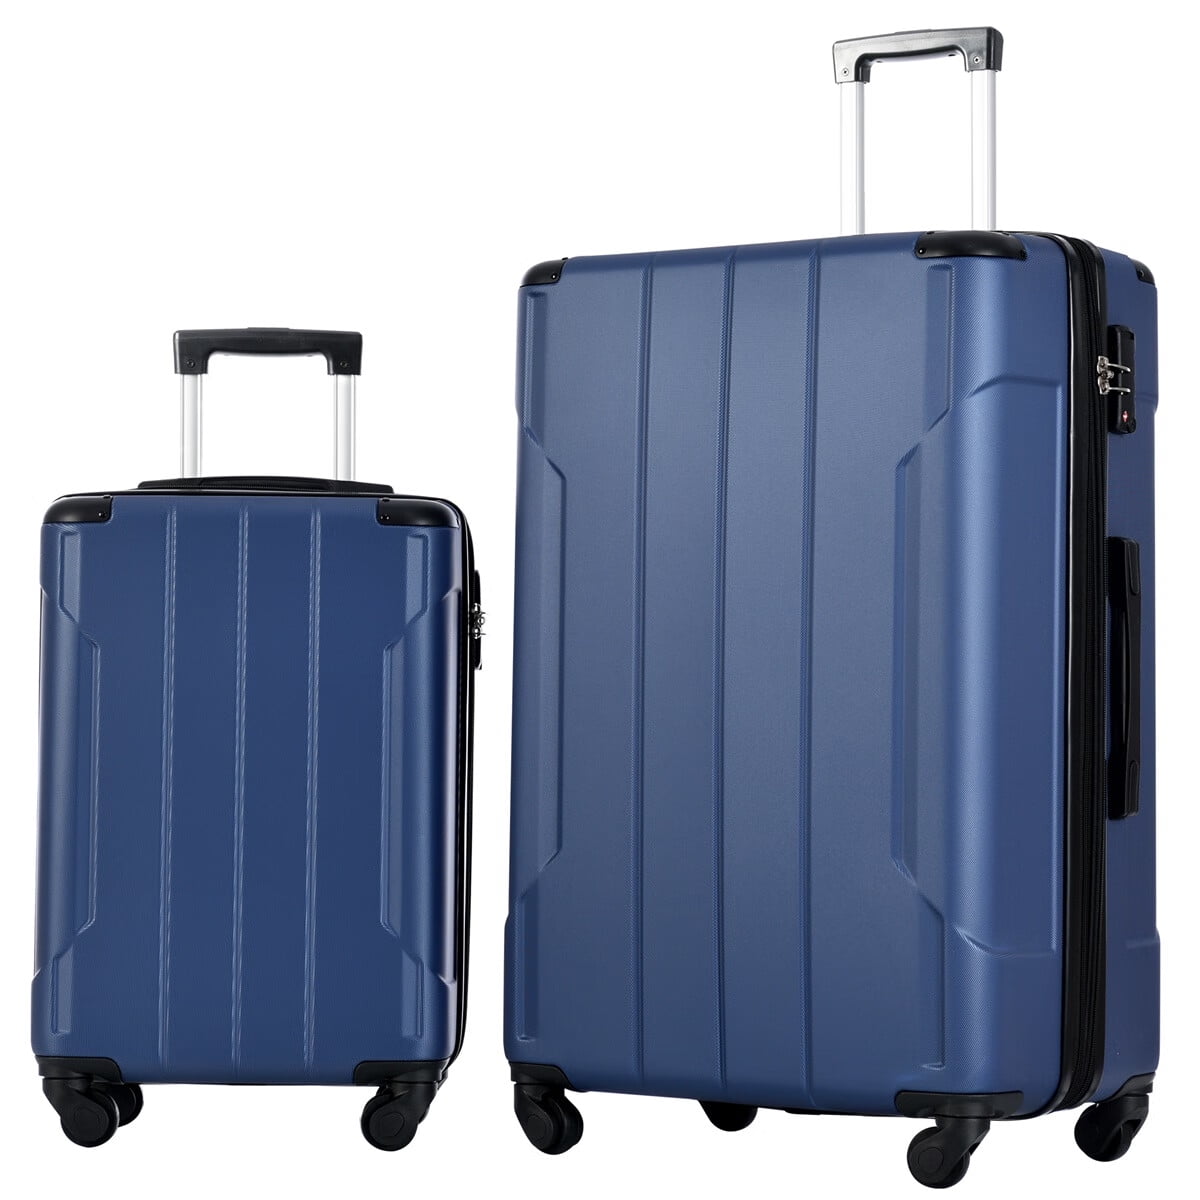 Sentern Hardside Luggage Sets 2 Piece Suitcase Set Expandable with TSA ...